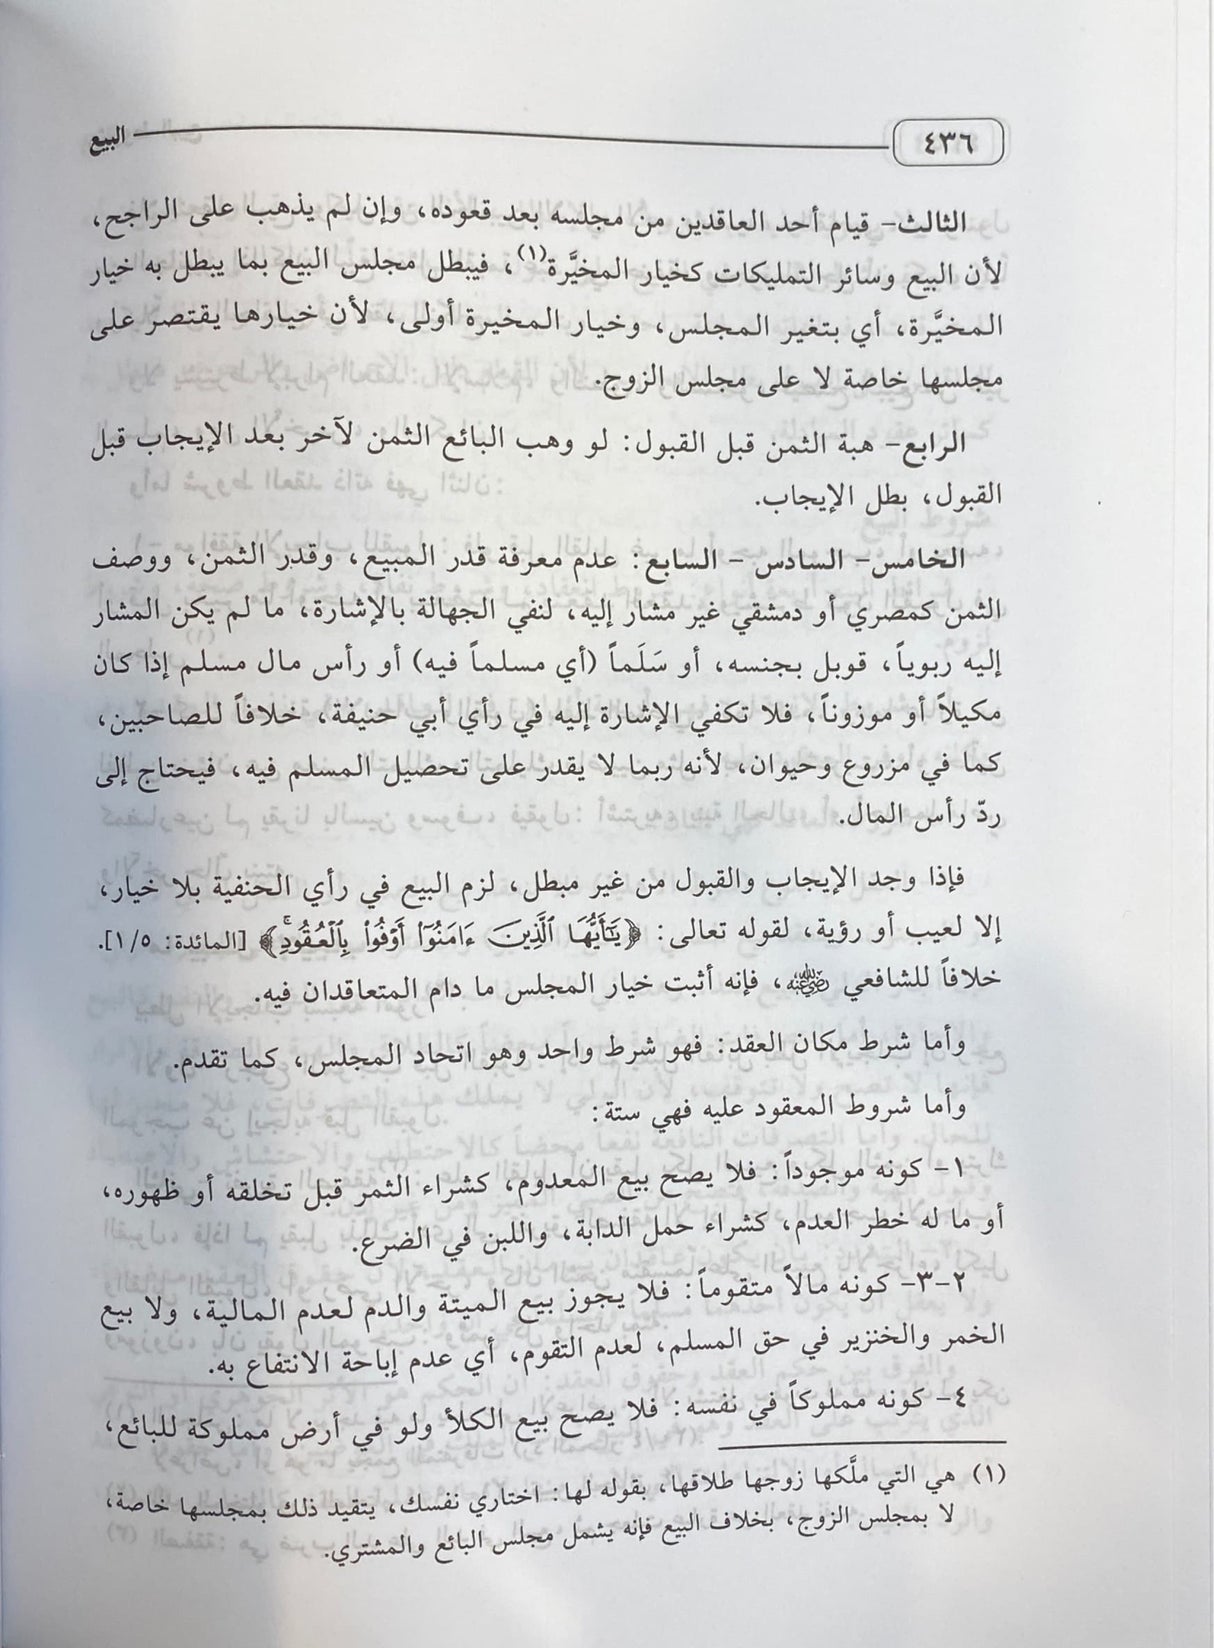 الفقه الحنفي الميسر Al Fiqh Ash Hanafi Al Muyassar (2 Volume Set)